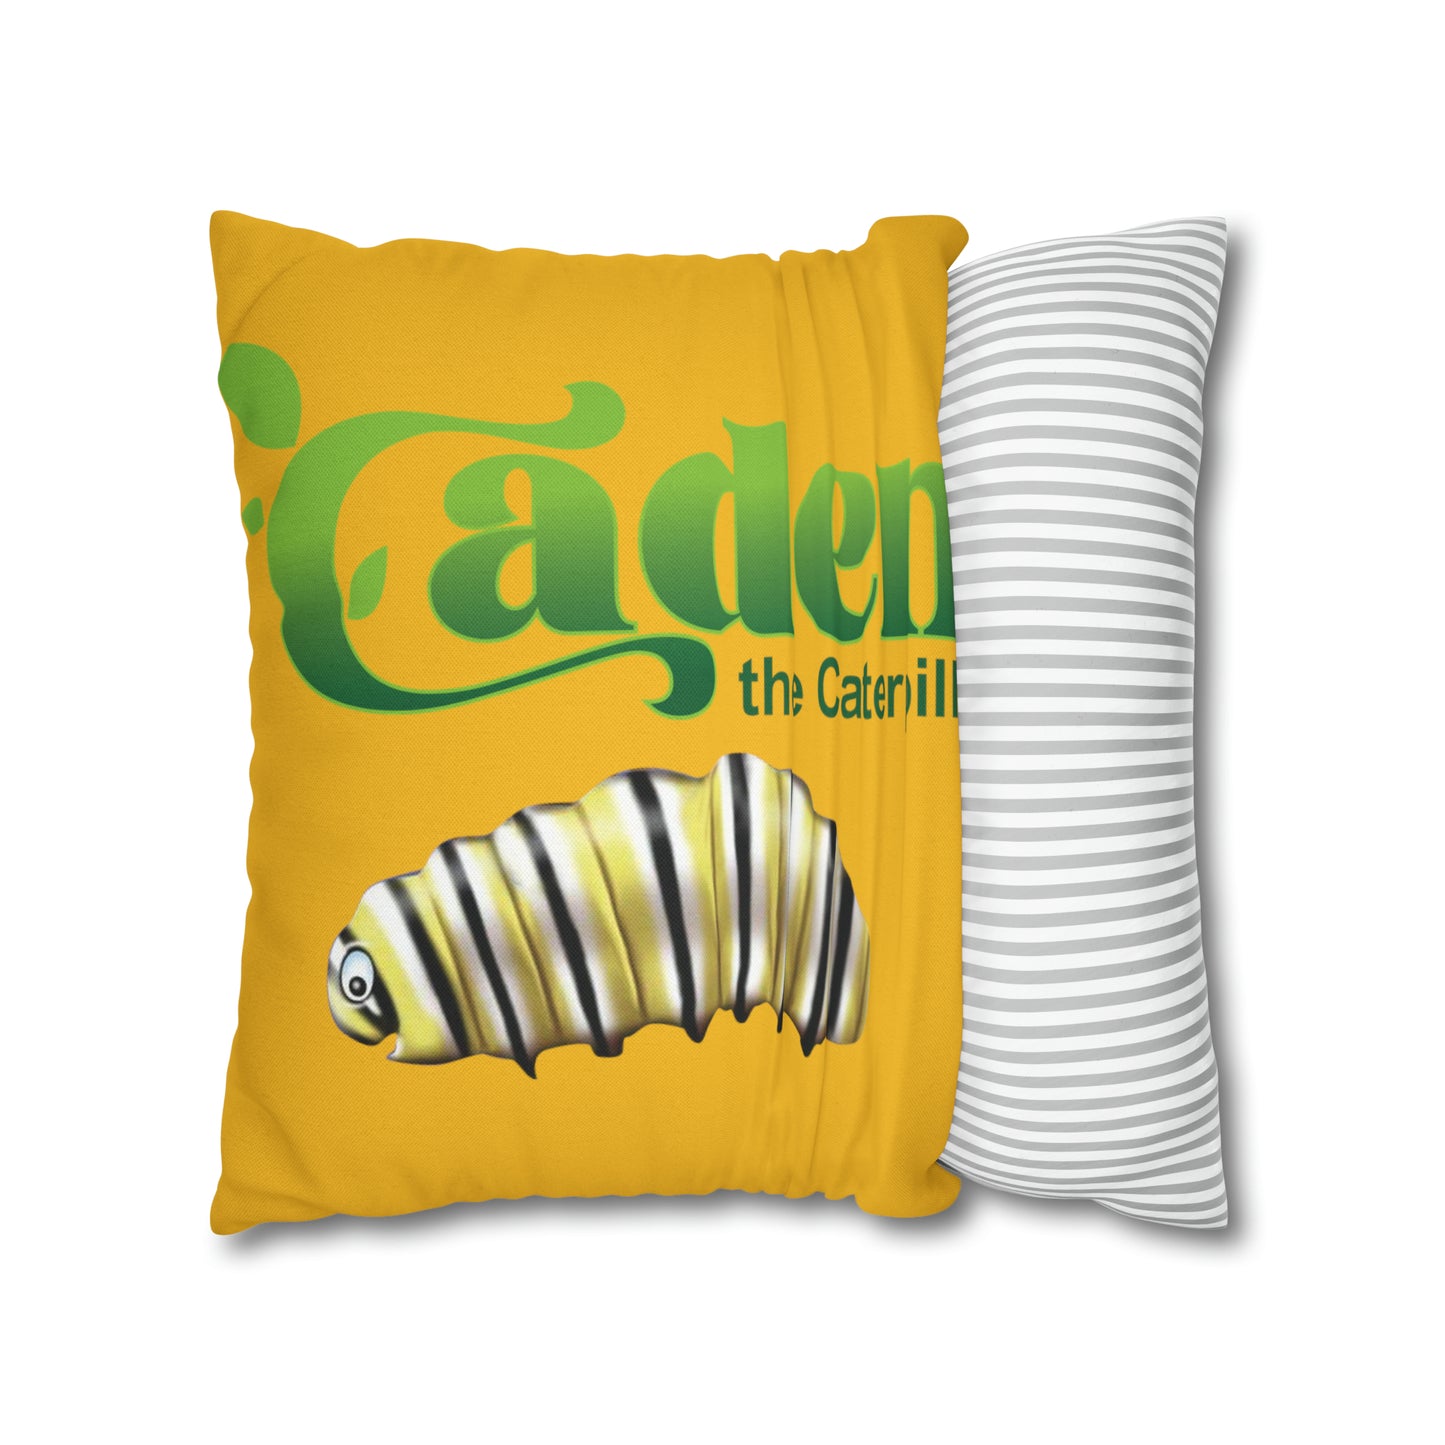 Caden Spun Polyester Square Pillow Case